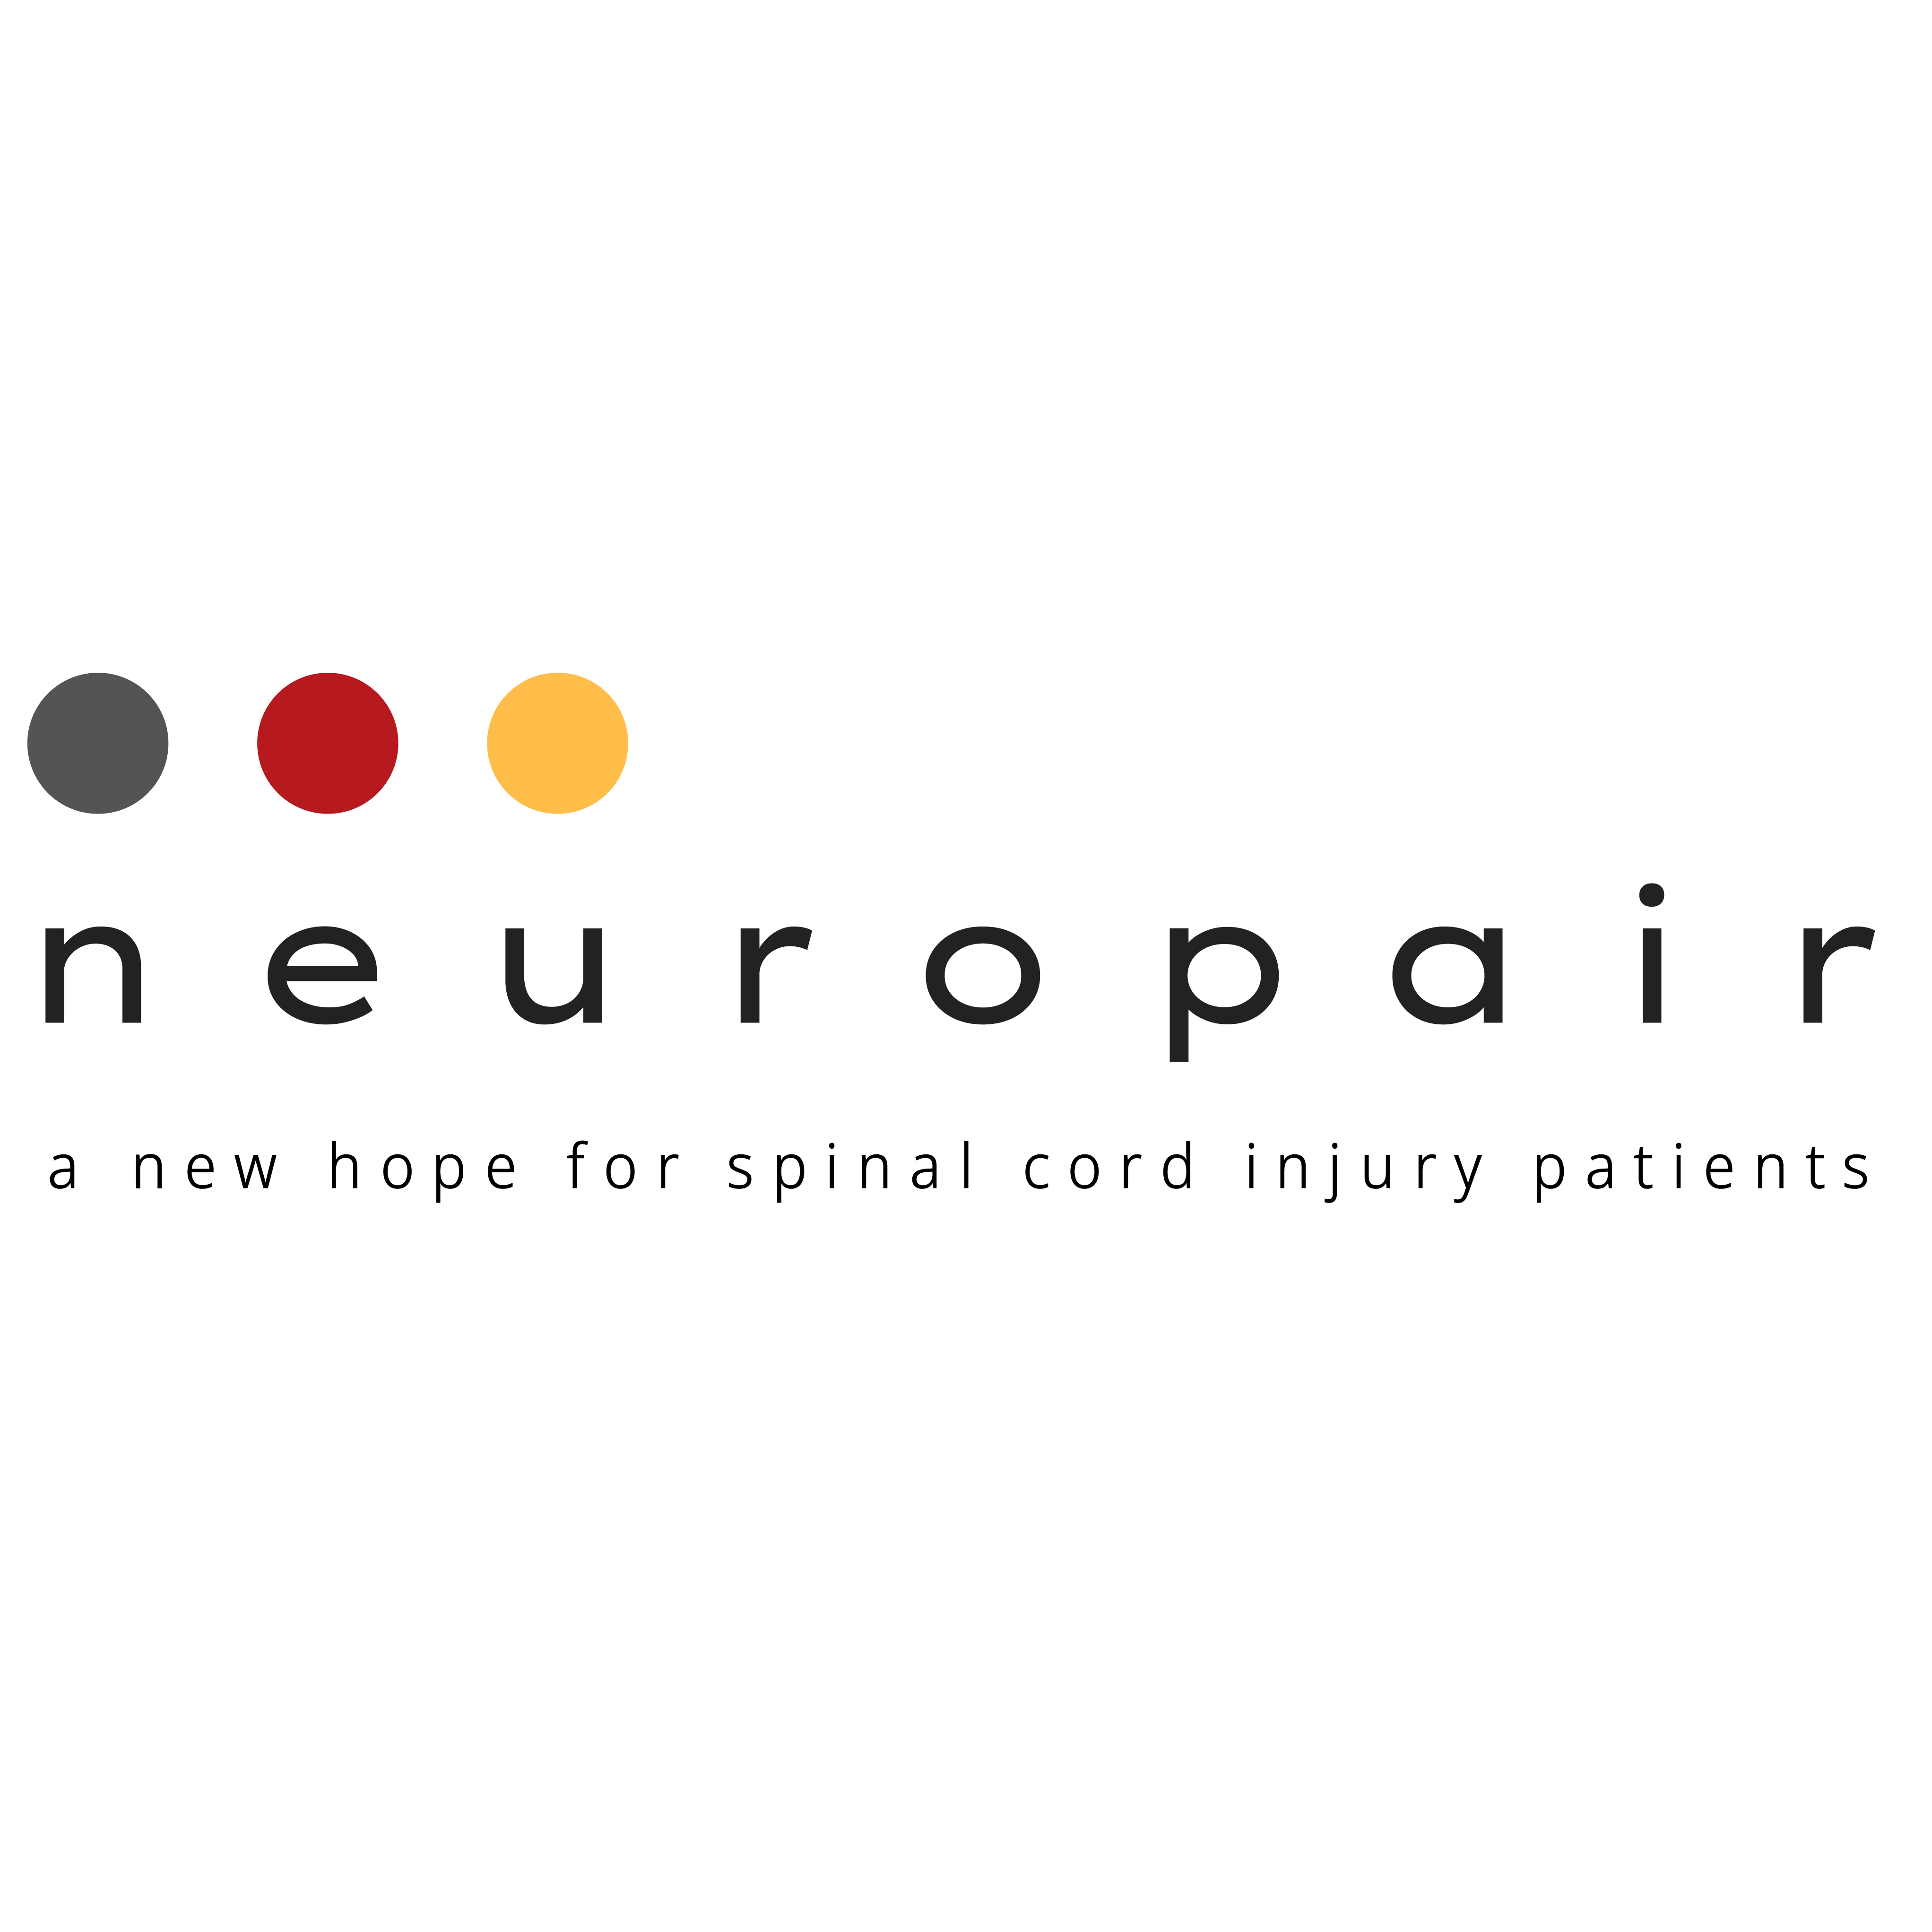 Neuropair logo NYU Entrep Chall 230124ai-01